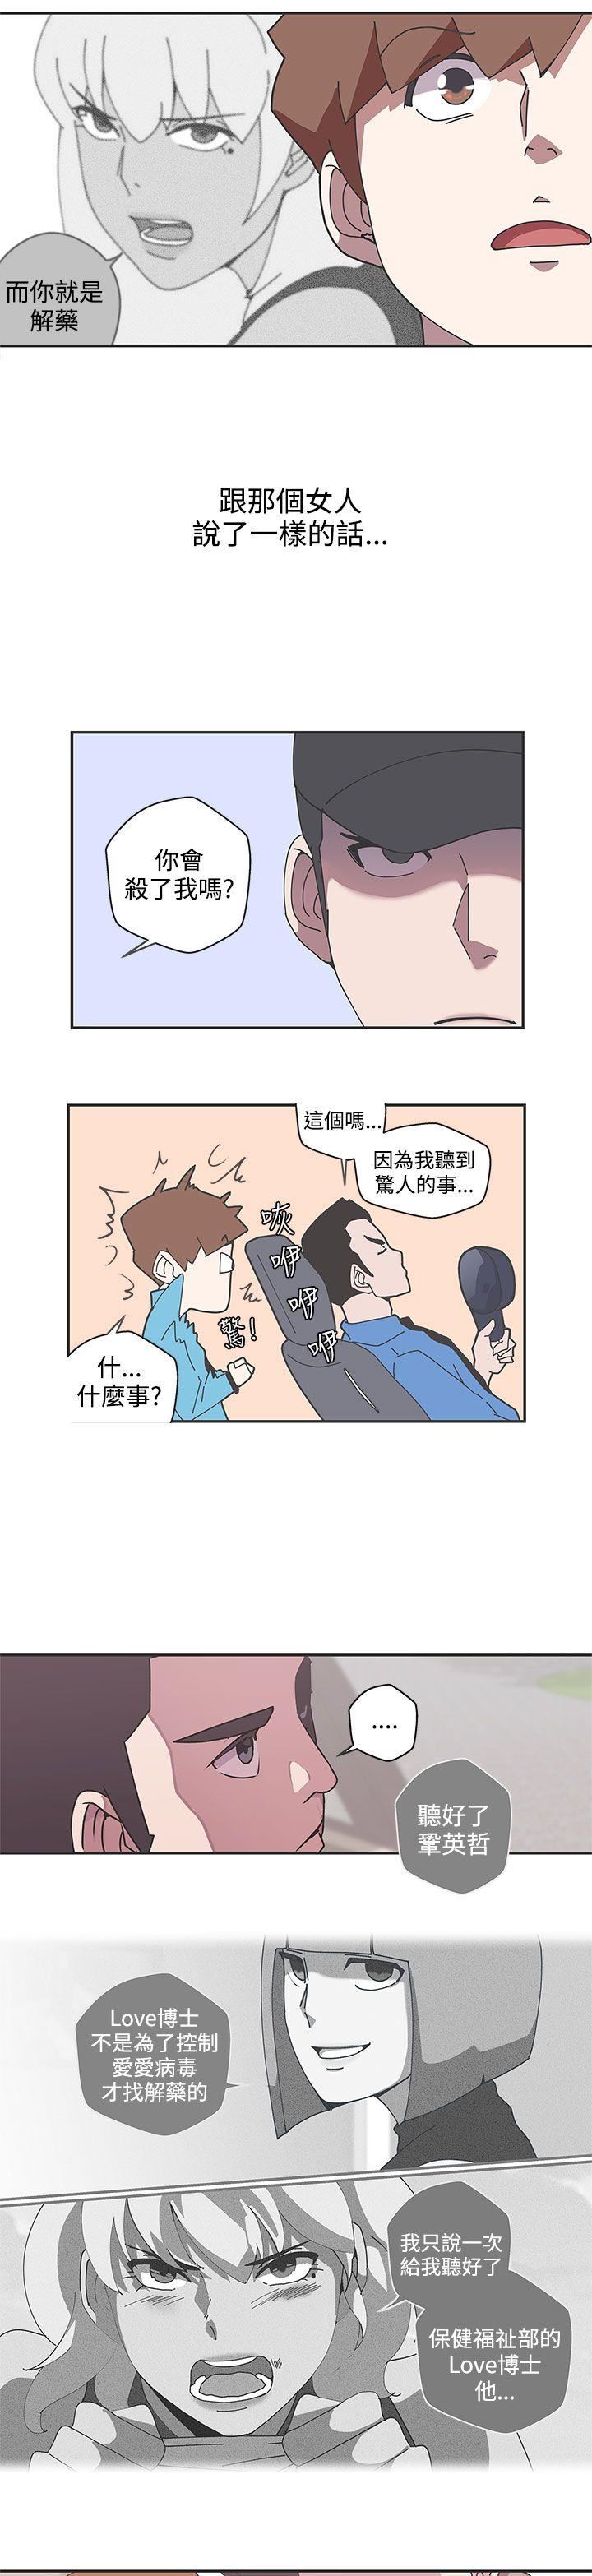 韩国污漫画 LOVE 愛的導航G 第45话 16